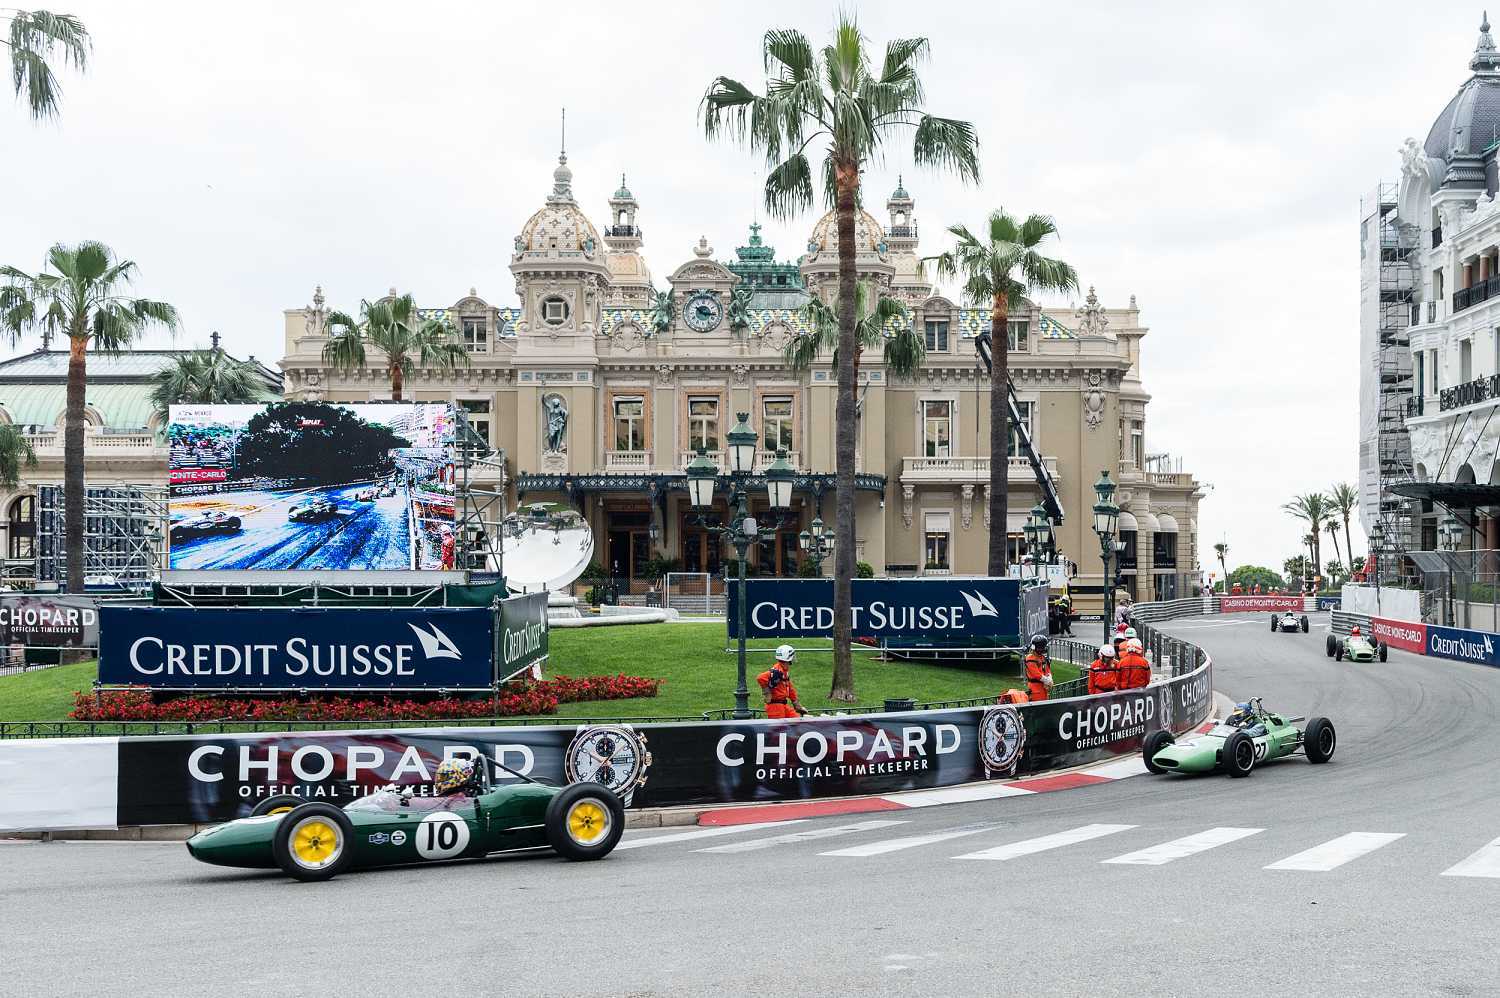 Chopard oficiální časomíra Grand Prix de Monaco 1 | Hodinky RADO HyperChrome 33